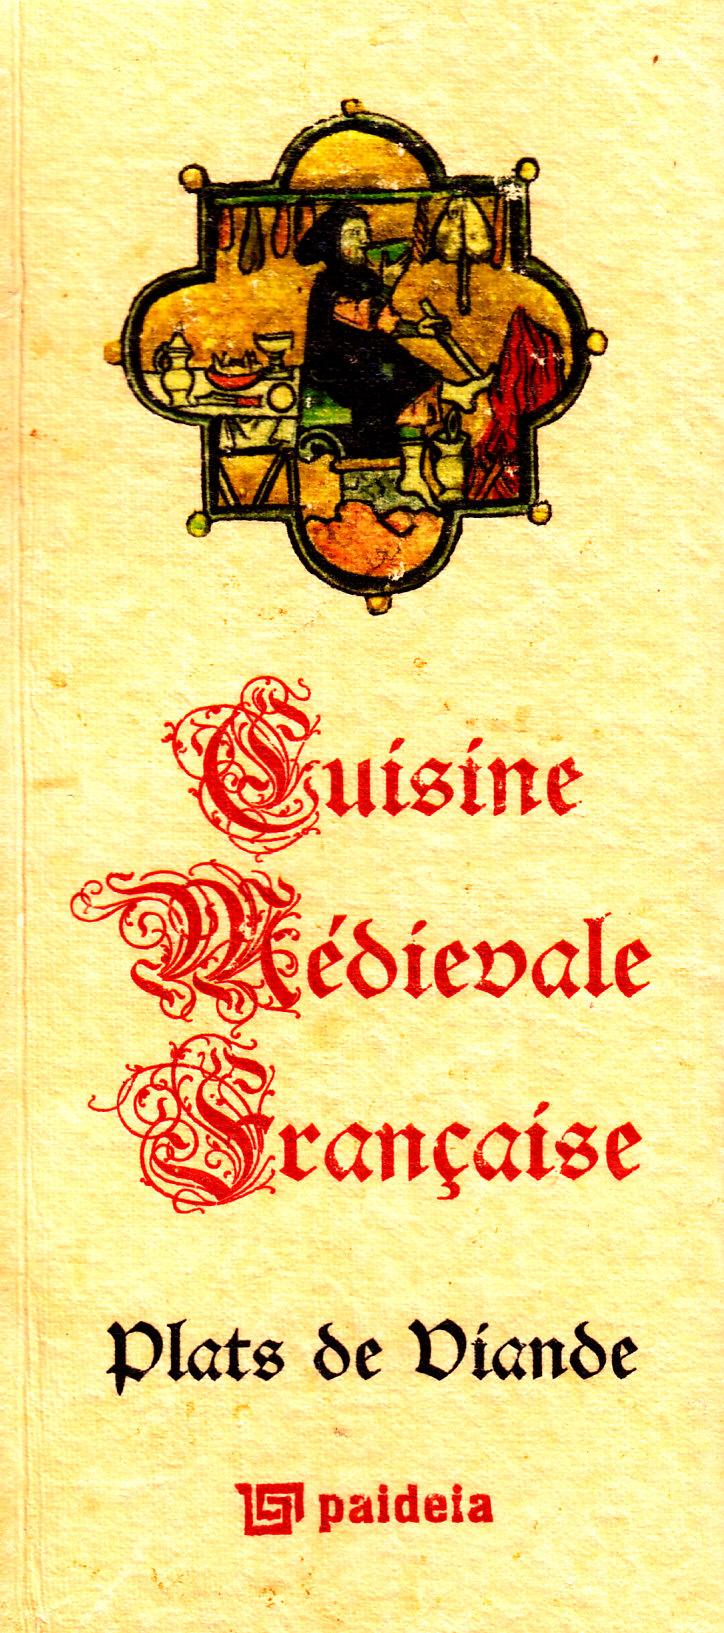 Cuisine medievale francaise - Plats De Diande